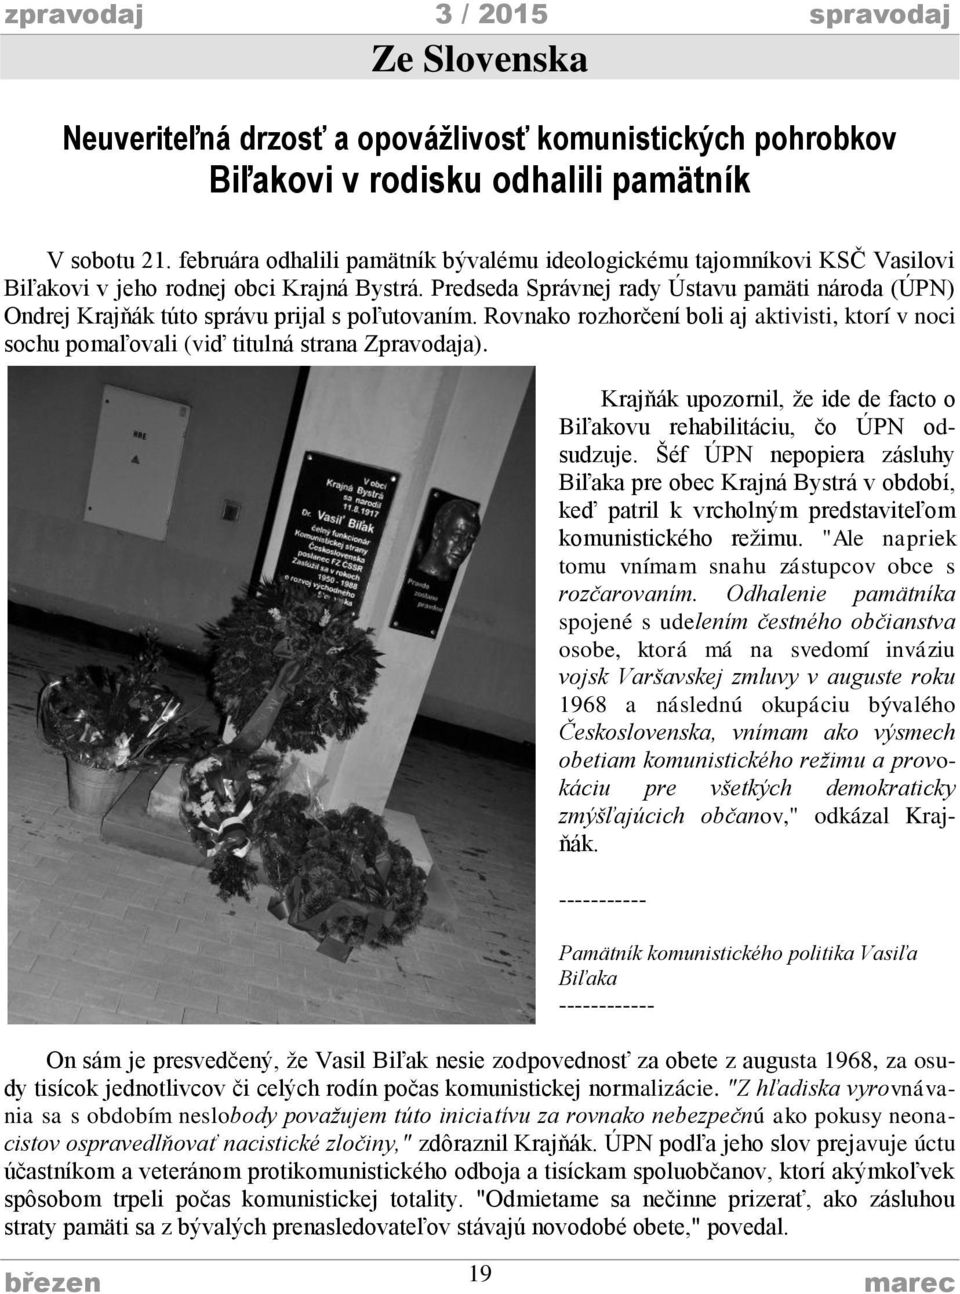 Predseda Správnej rady Ústavu pamäti národa (ÚPN) Ondrej Krajňák túto správu prijal s poľutovaním. Rovnako rozhorčení boli aj aktivisti, ktorí v noci sochu pomaľovali (viď titulná strana Zpravodaja).